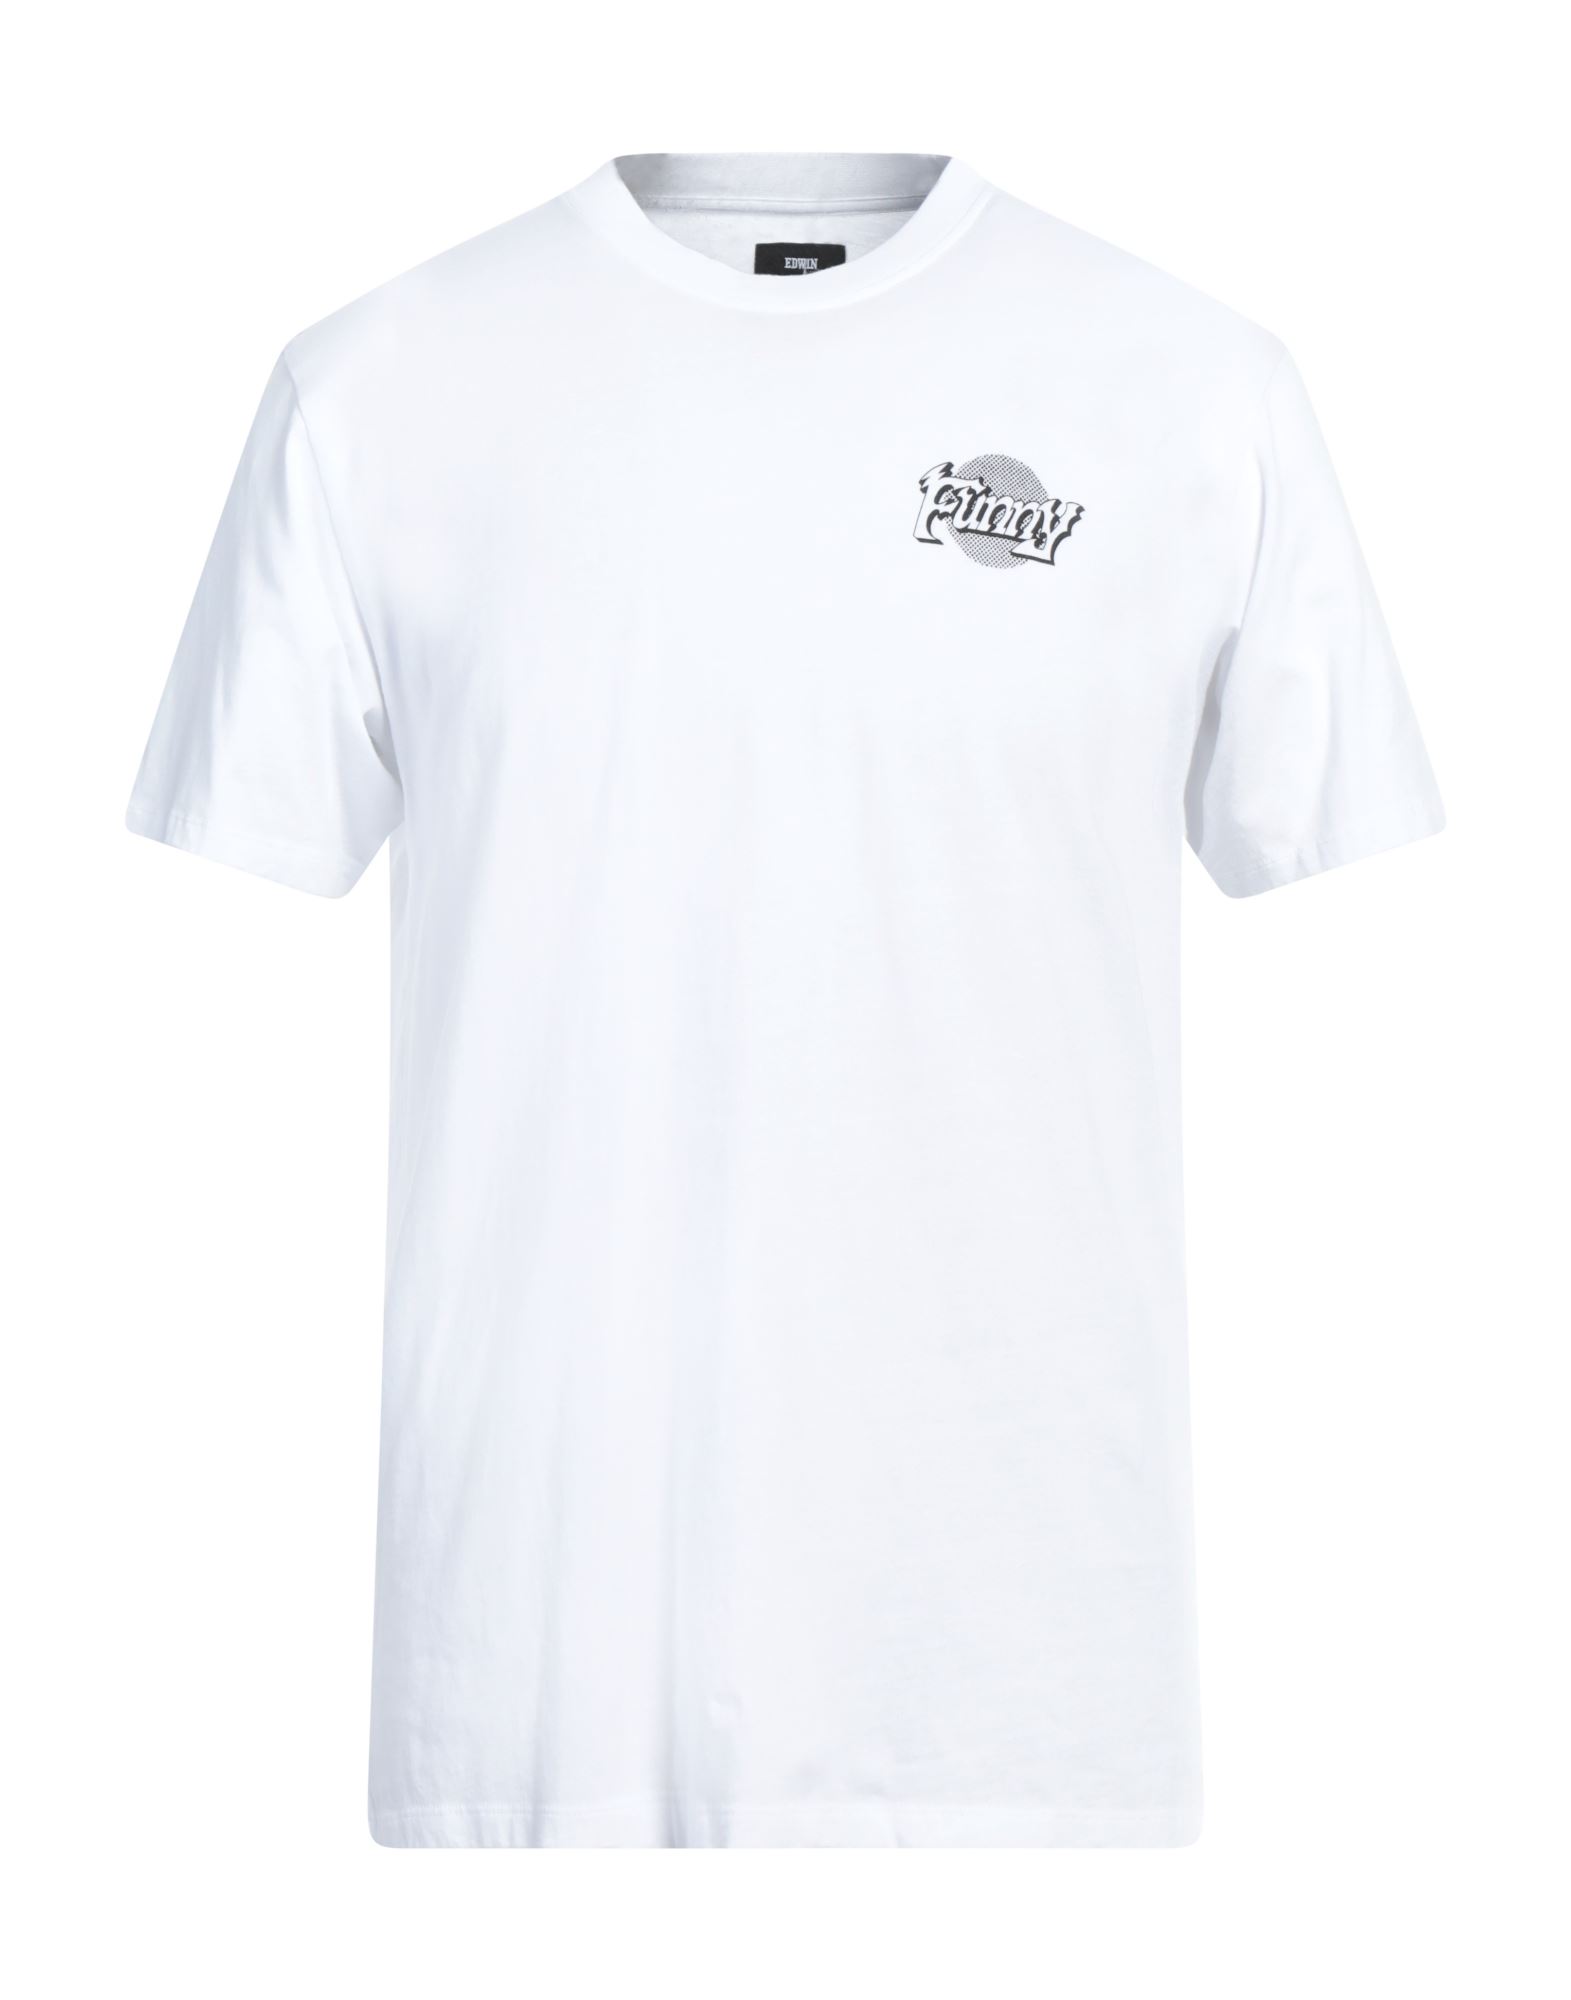 EDWIN T-shirts Herren Weiß von EDWIN